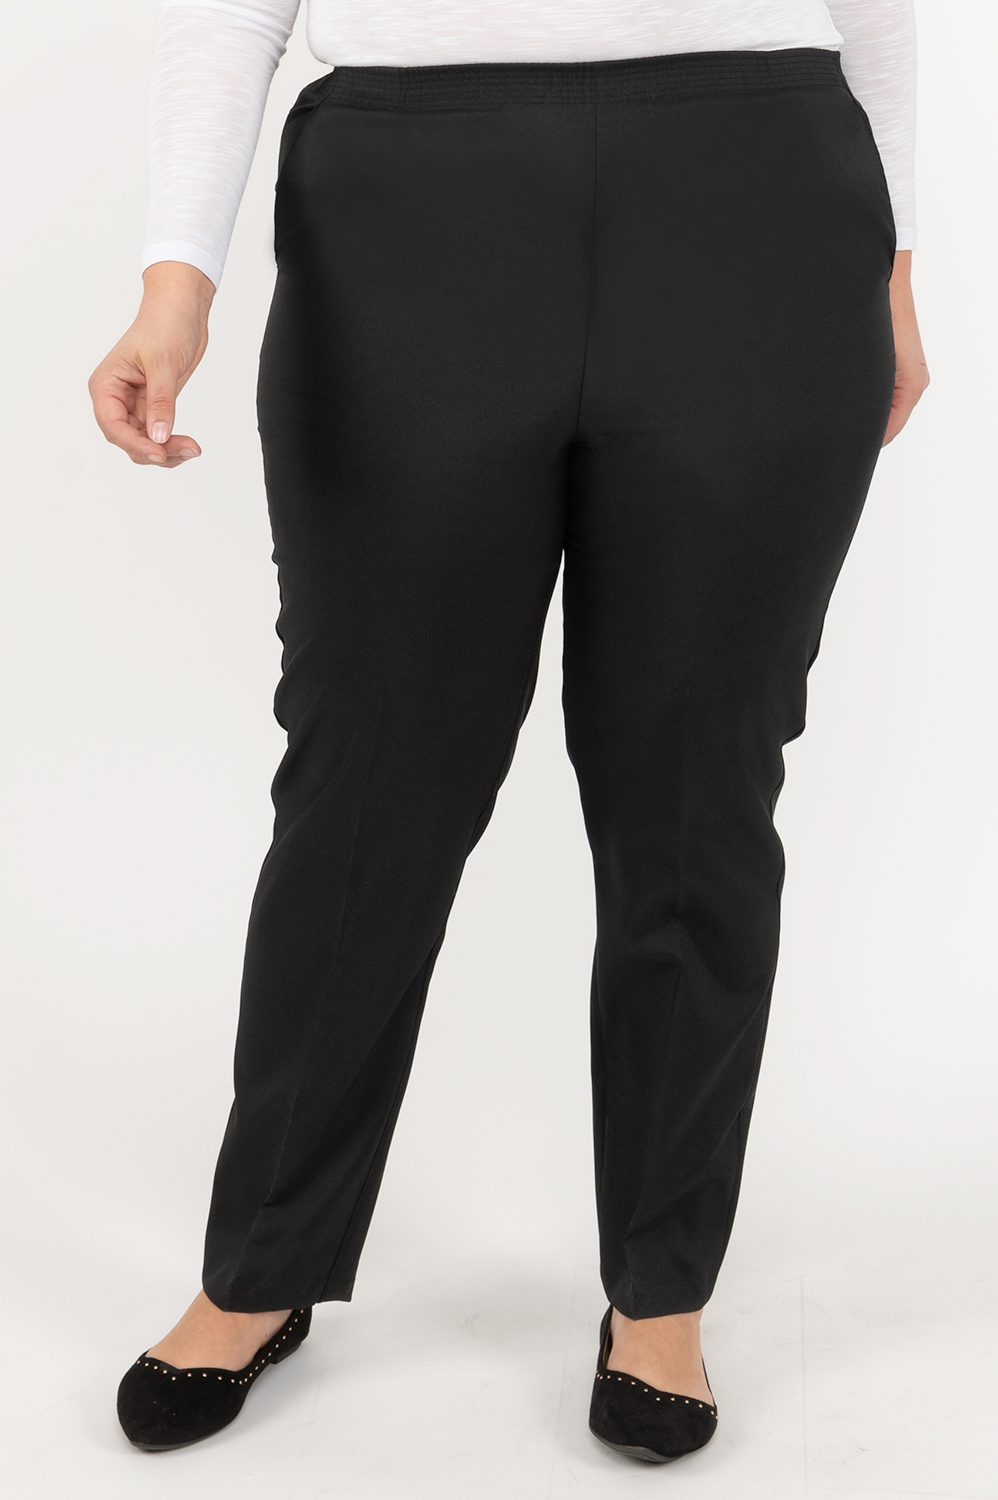 Pull On Dress Pants - Plus Size Black Pants